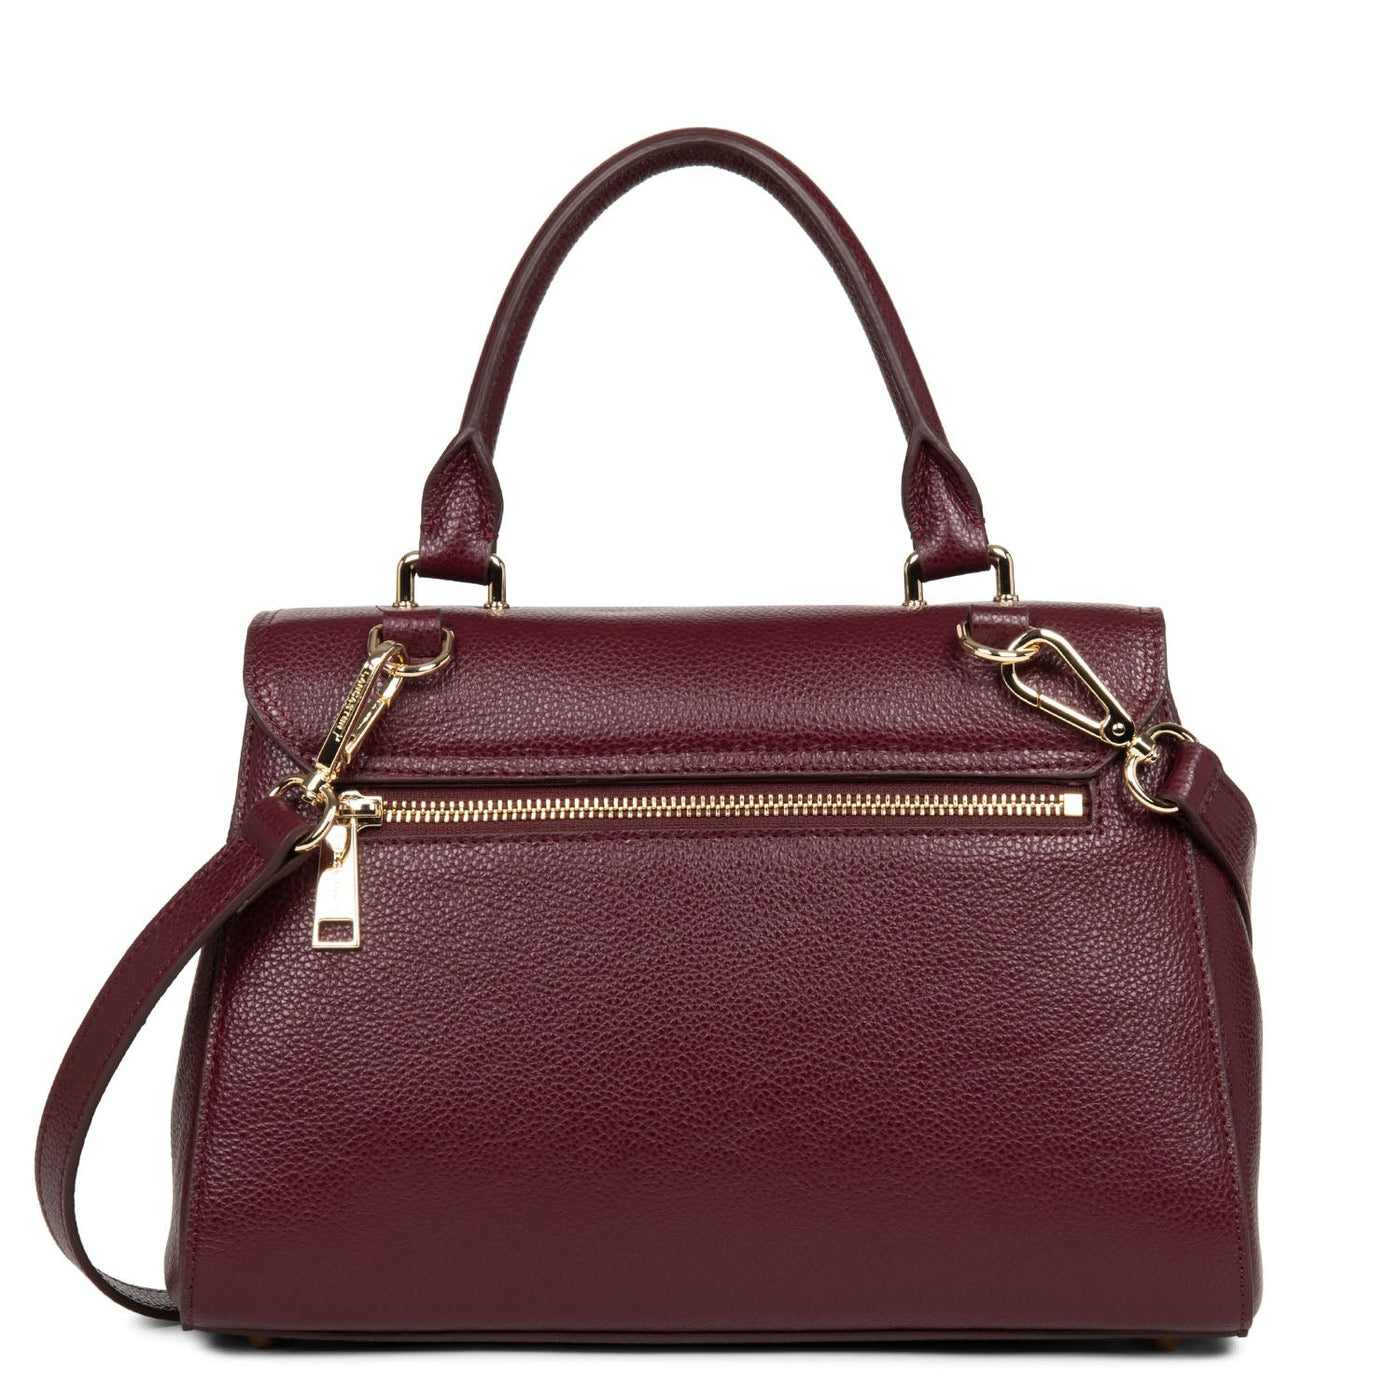 handbag - foulonne milano #couleur_pourpre